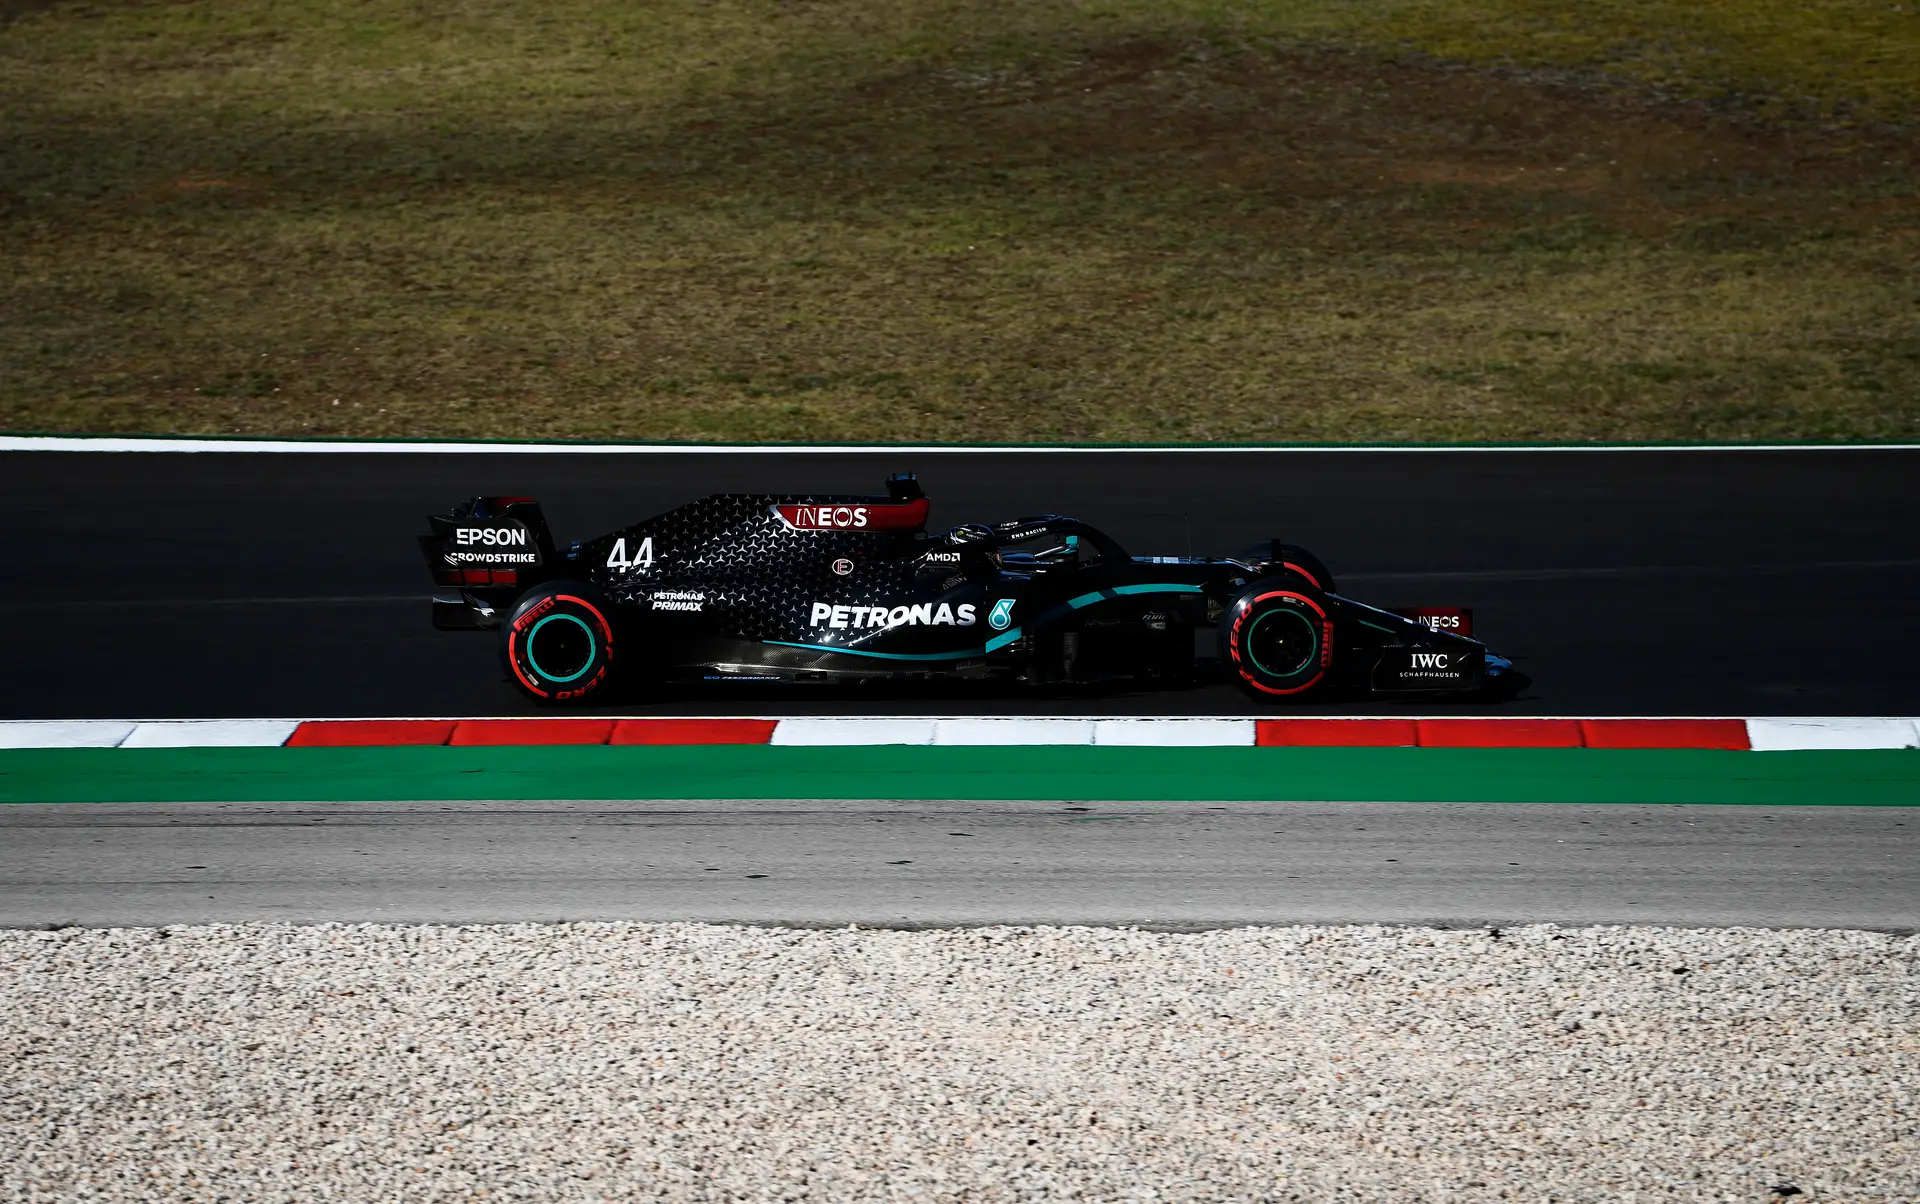 GP de Singapura: Sainz puxa dobradinha da Ferrari em 2º treino